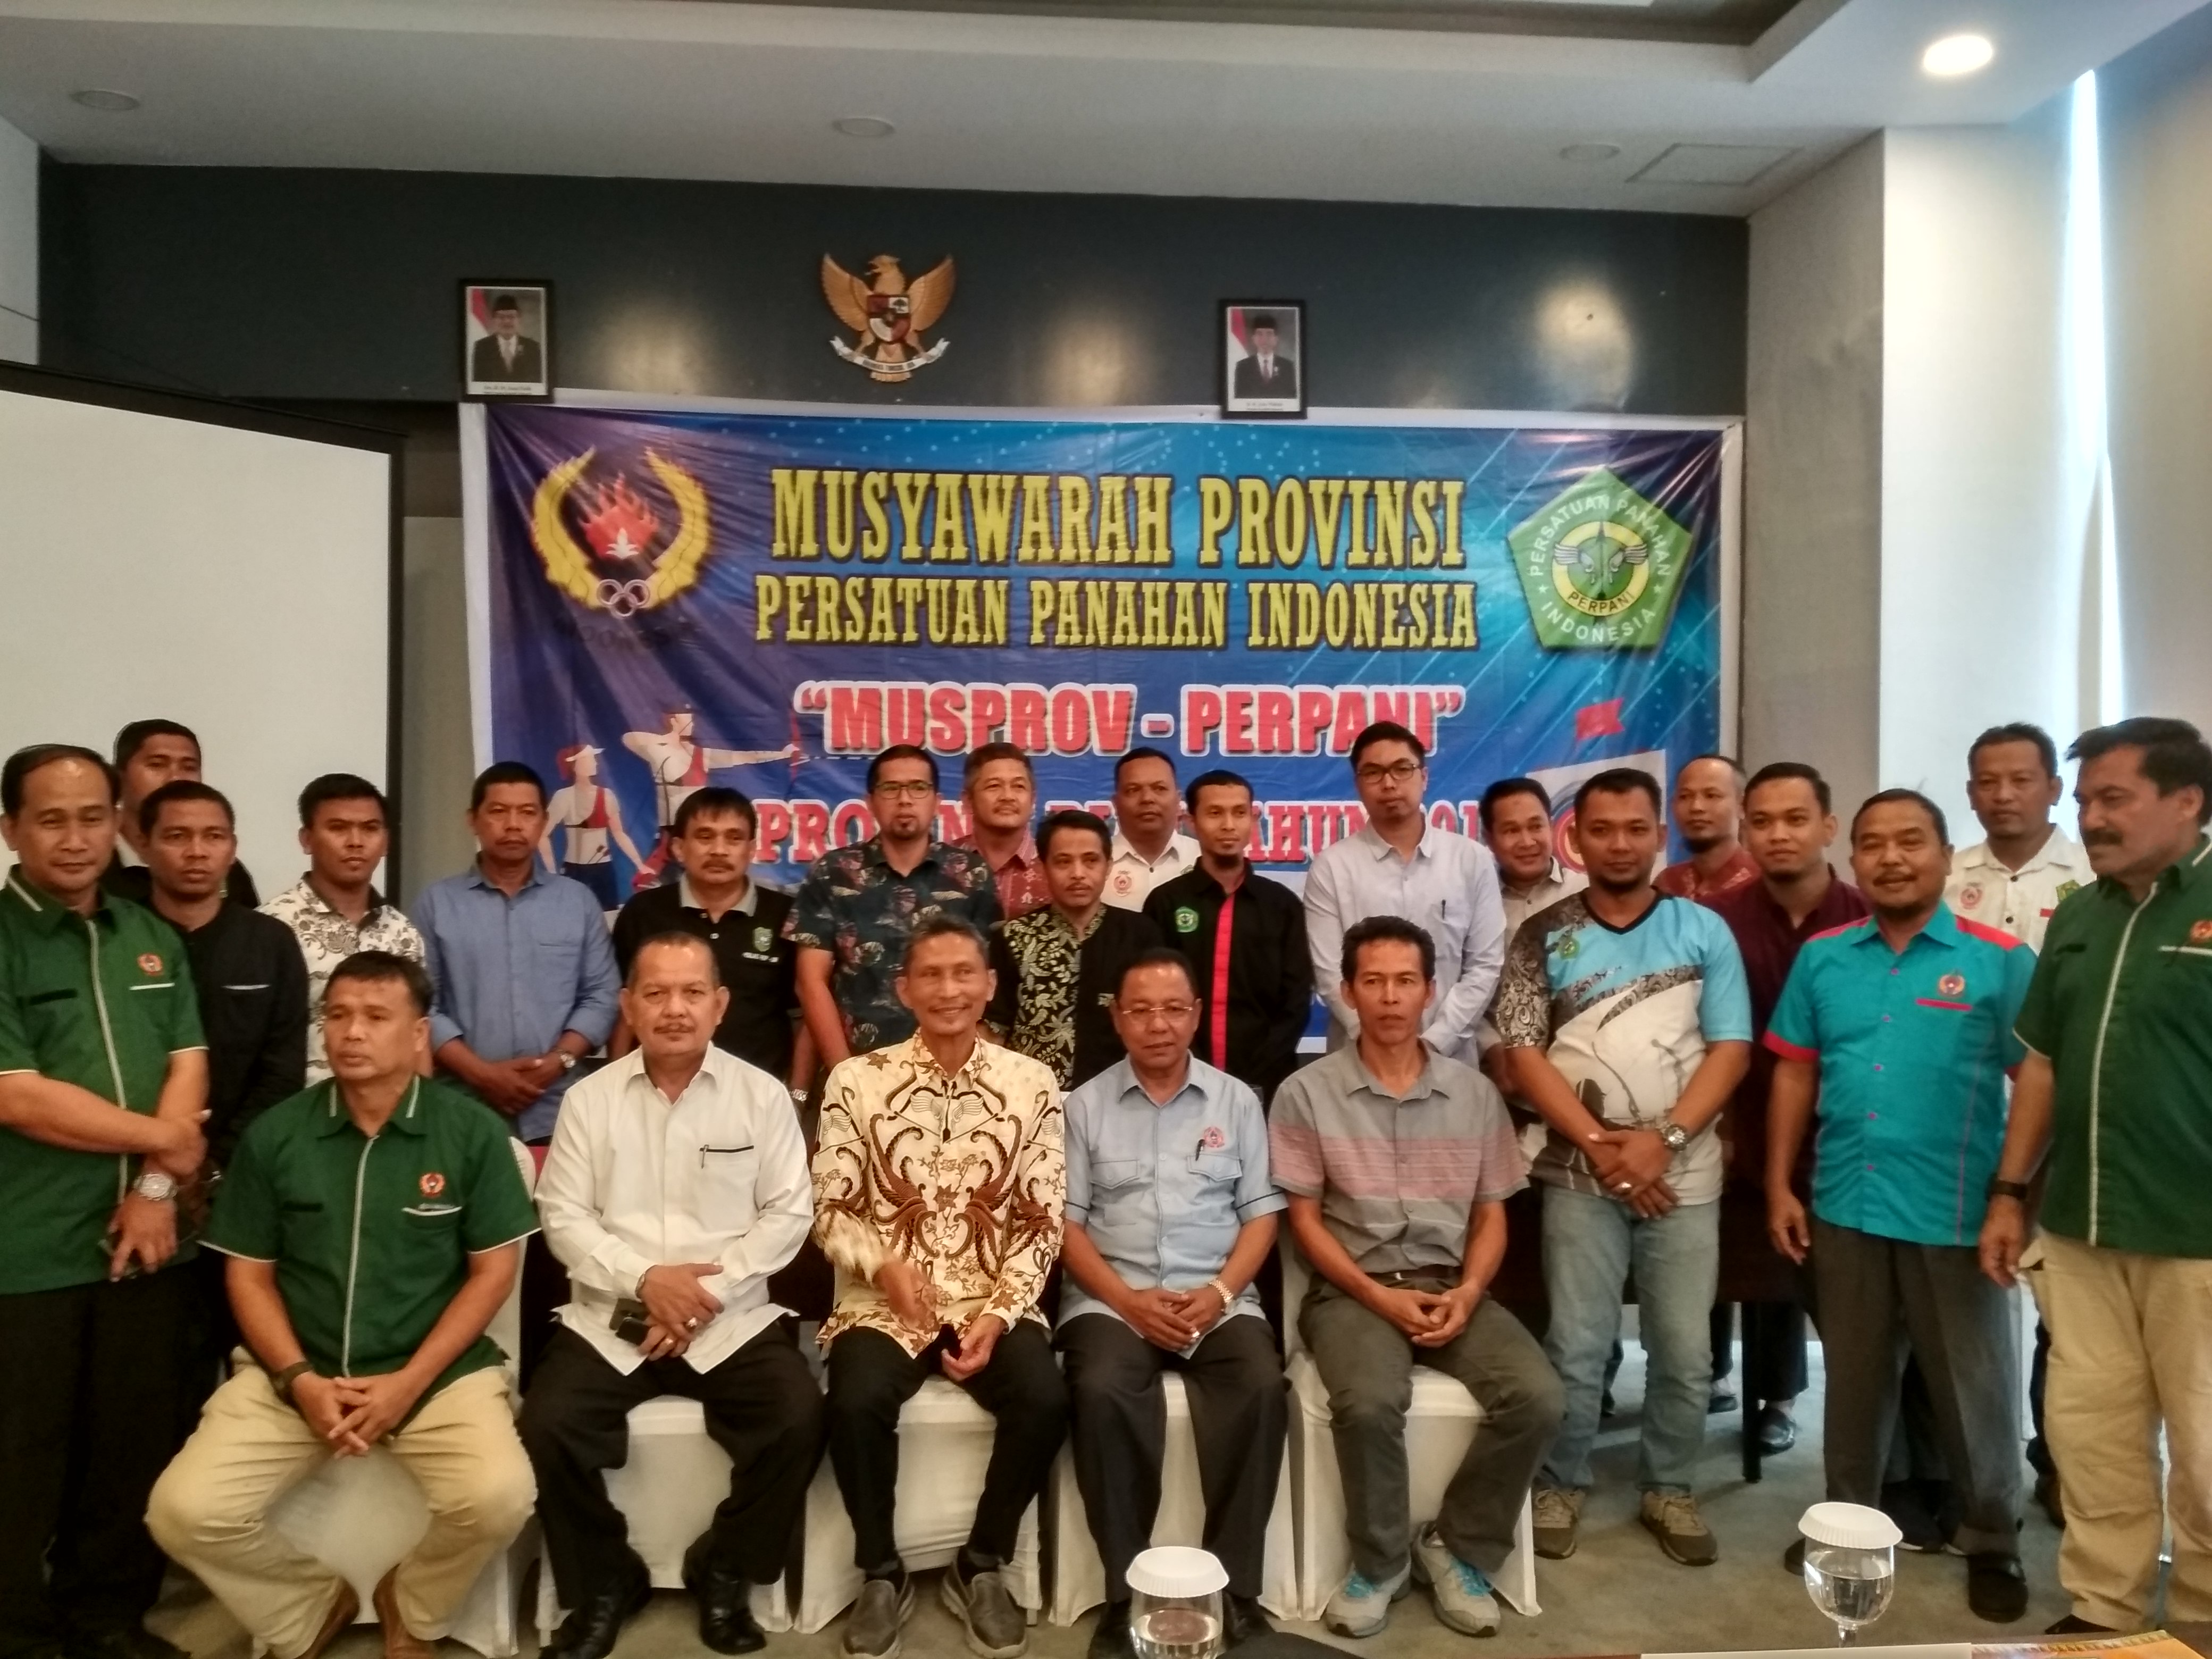 Isnurizal Terpilih Sebagai Ketua Perpani Riau, KONI: Rangkul Anggota